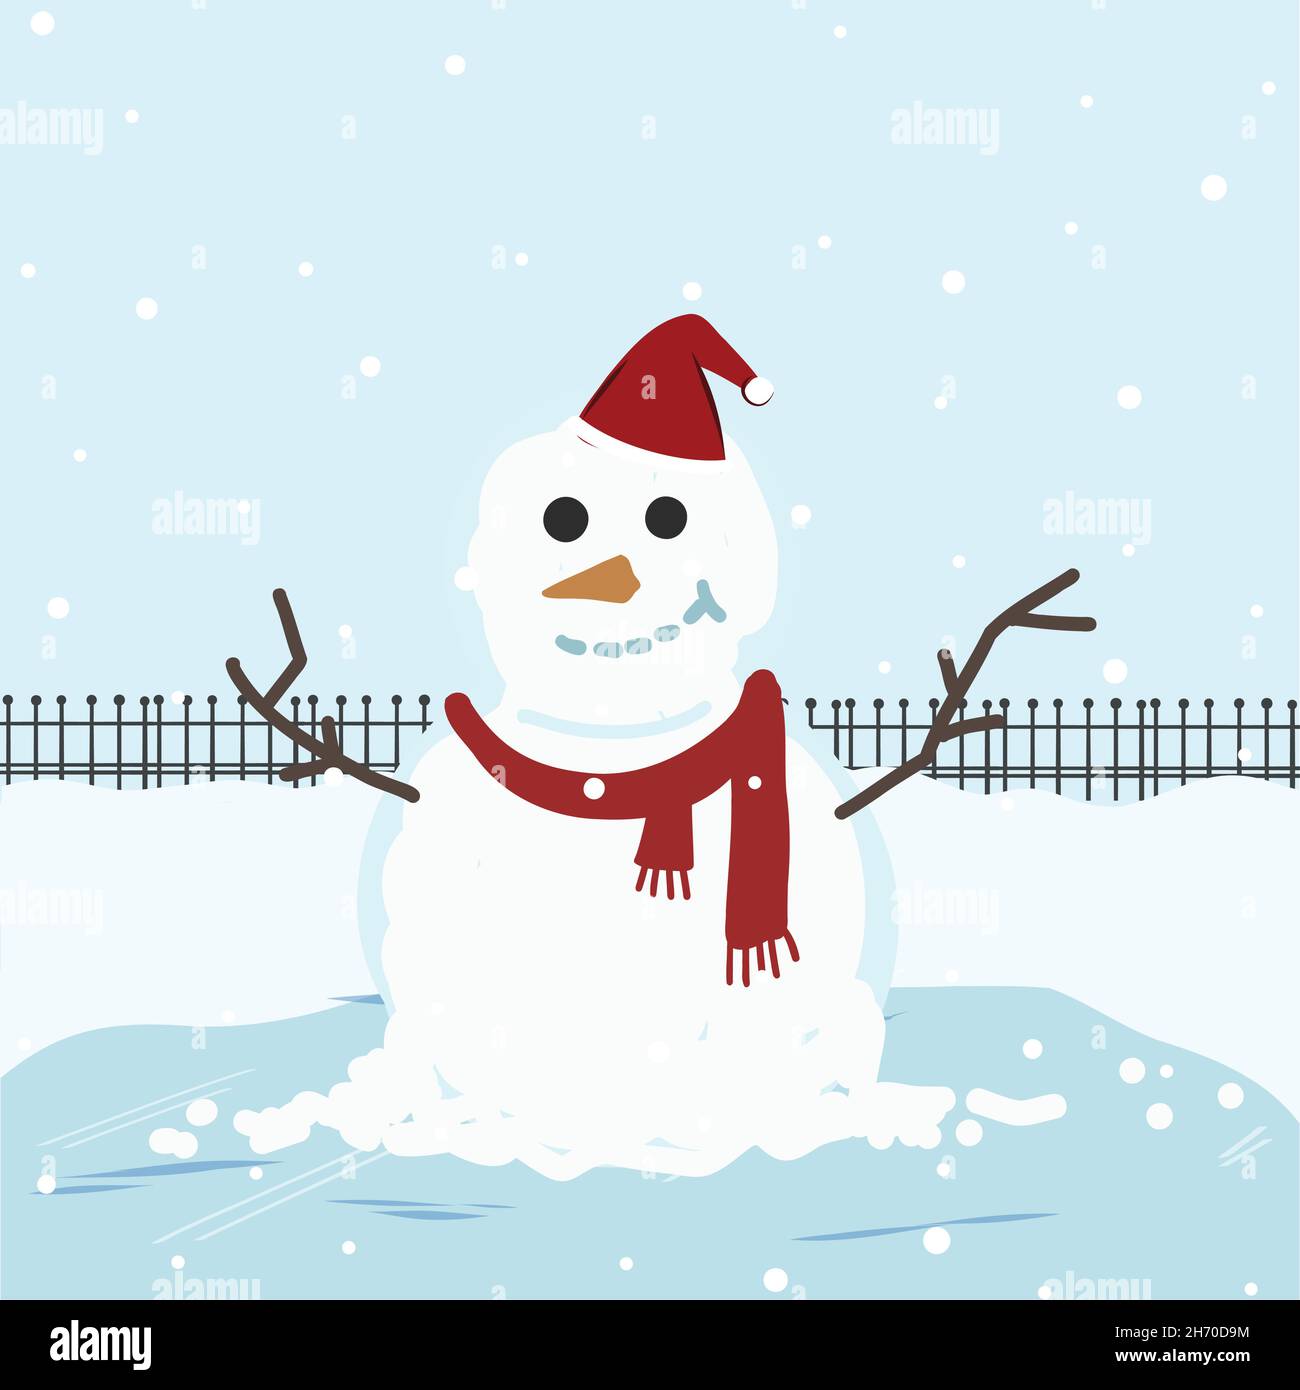 Winter Weihnachten Ferien Schneemann. Fröhliche Schneemänner in santa-Kostümen. Schneemann-Koch, Zauberer, Schneemann mit Hut und Schal während der Schneezeit weihnachten. Mo Stock Vektor